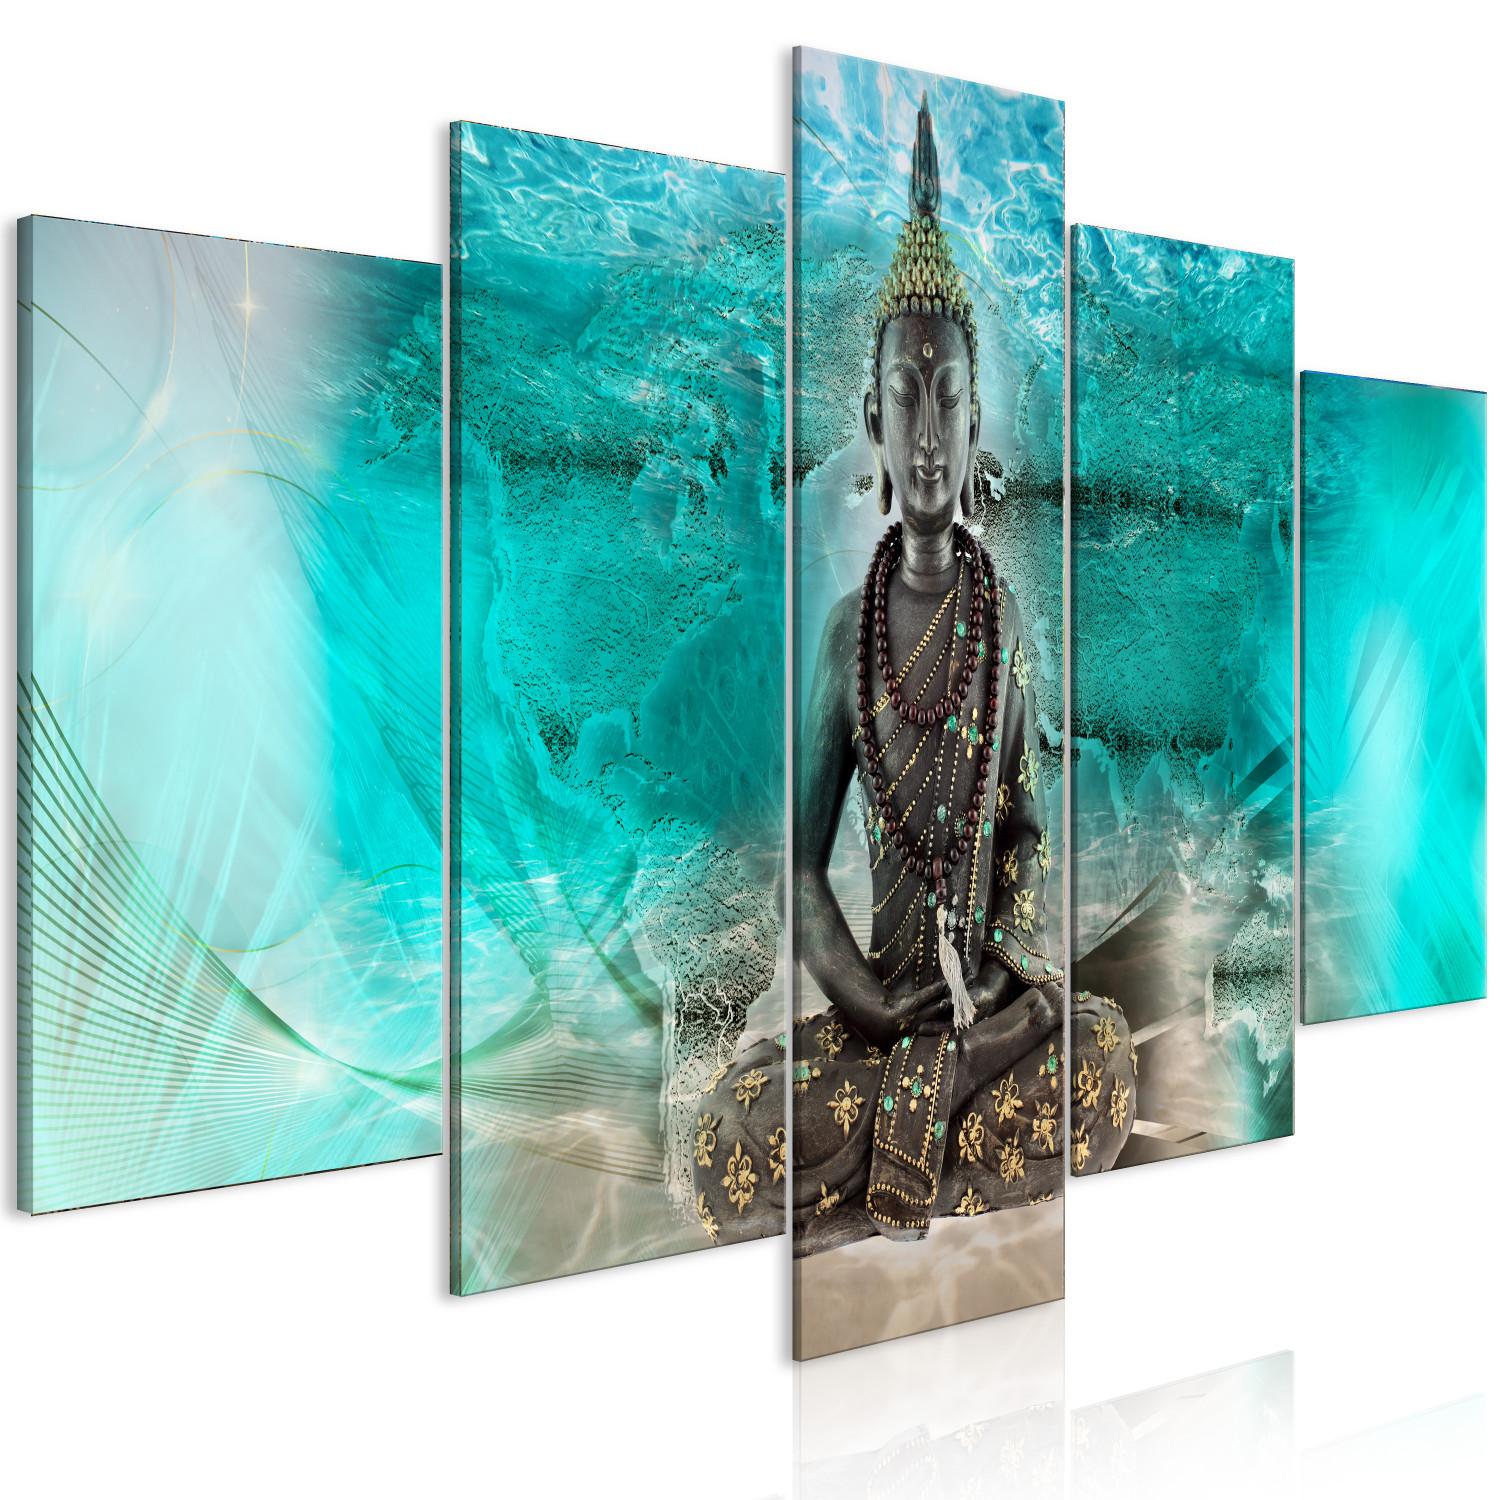 Cuadro decorativo Meditación turquesa (5 piezas) - figura de Buda al estilo Zen